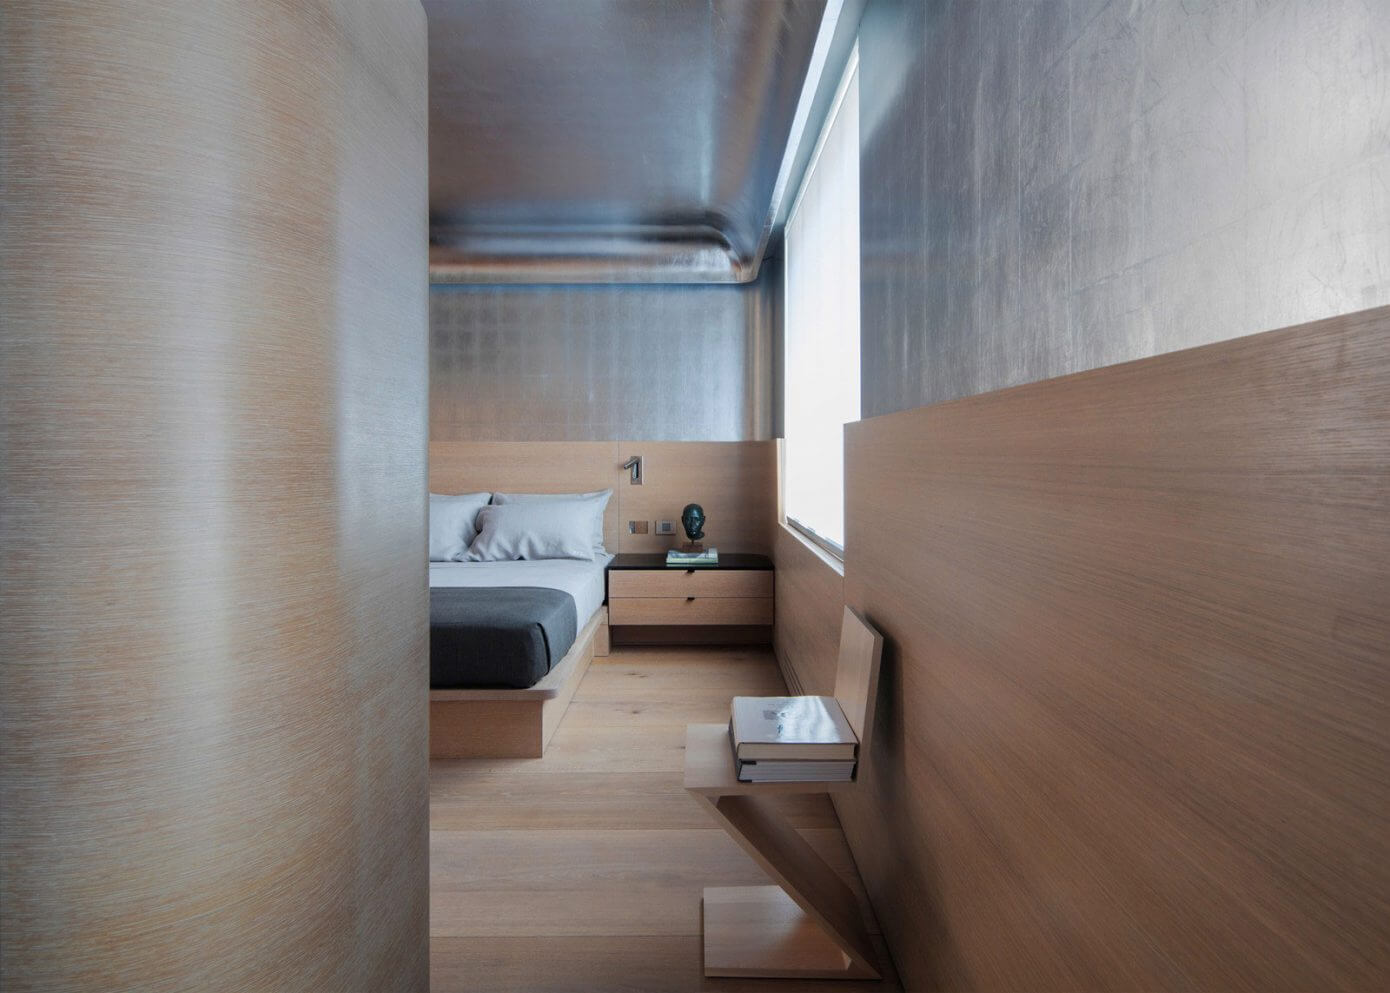 Inspiring Apartment by Ghiora Aharoni Design Studio